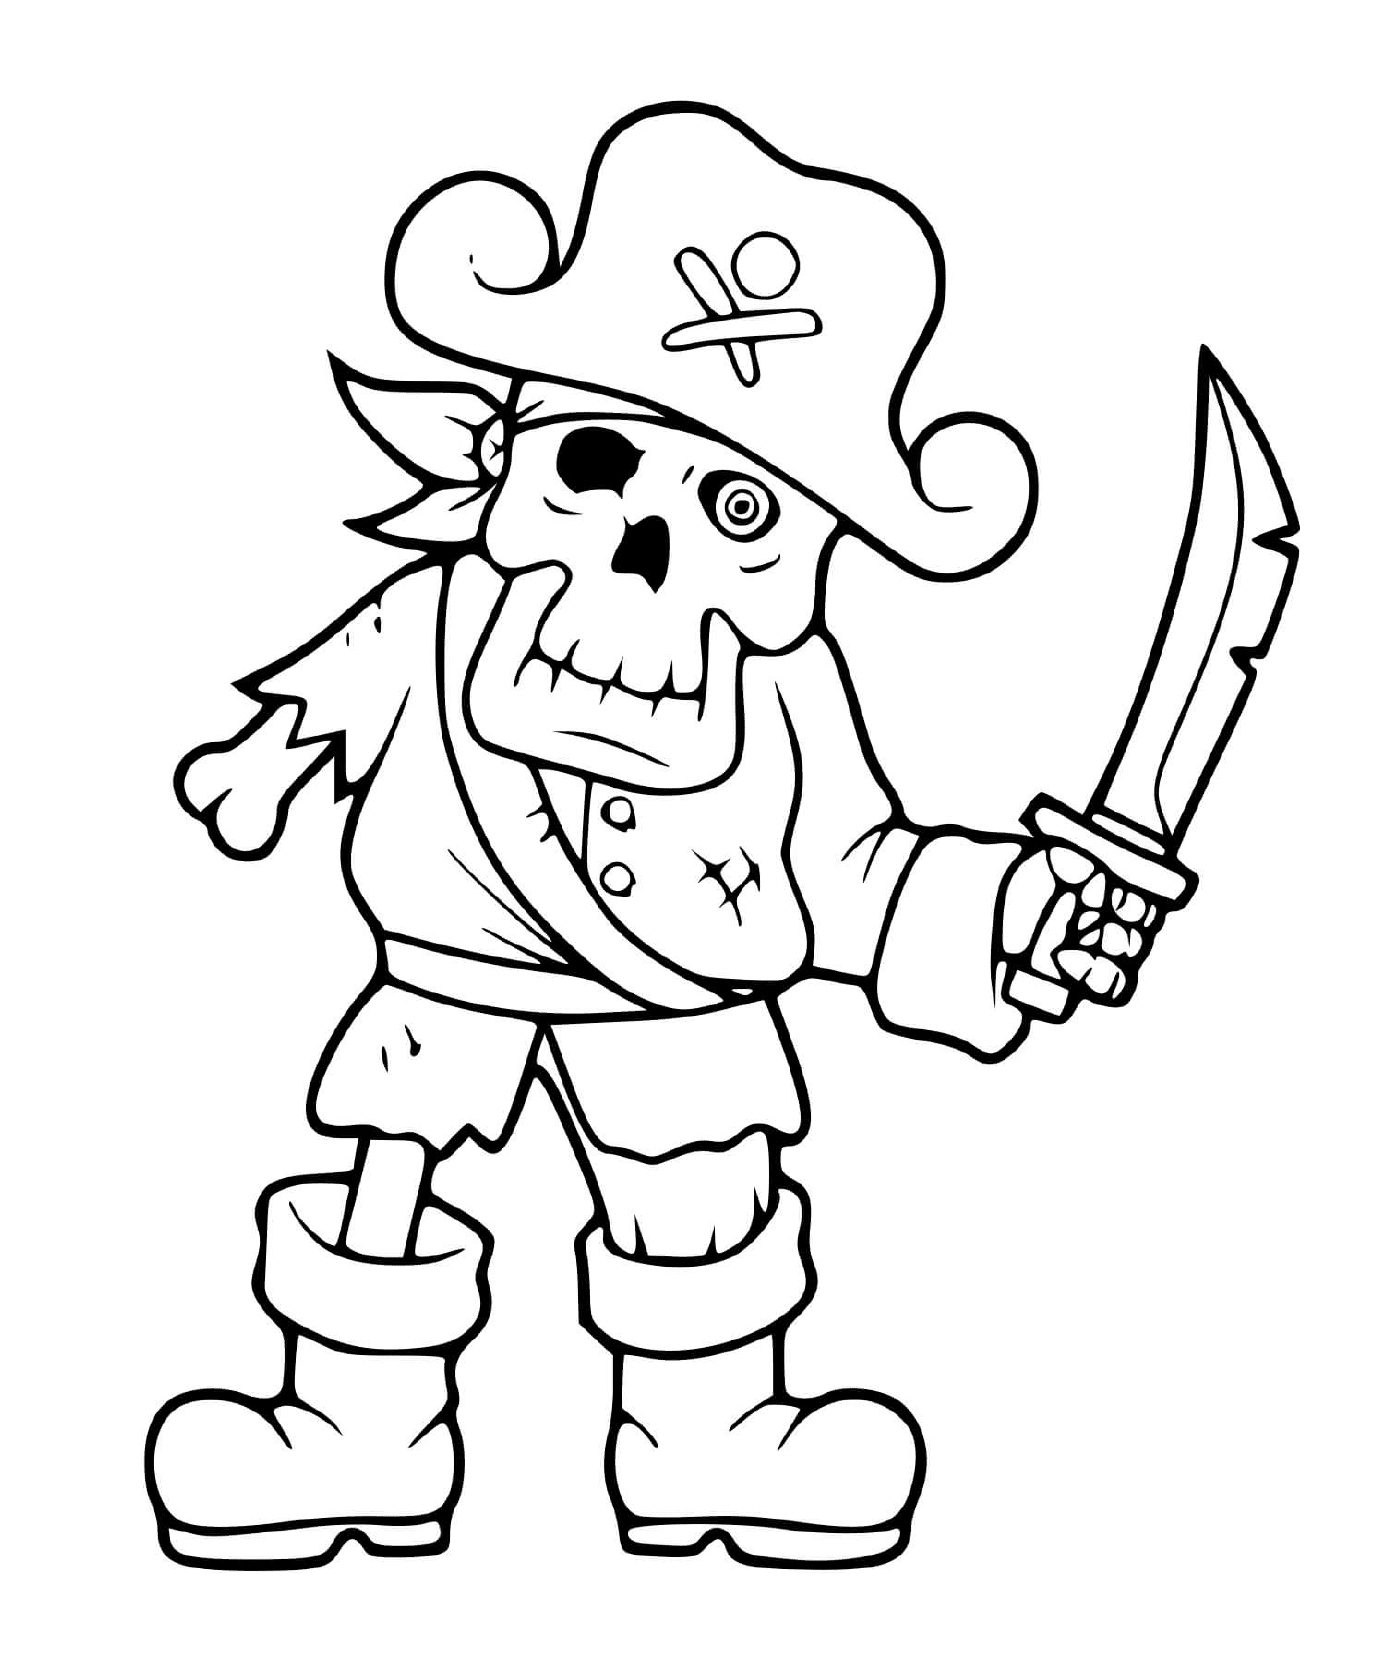  Esqueleto pirata assustador 